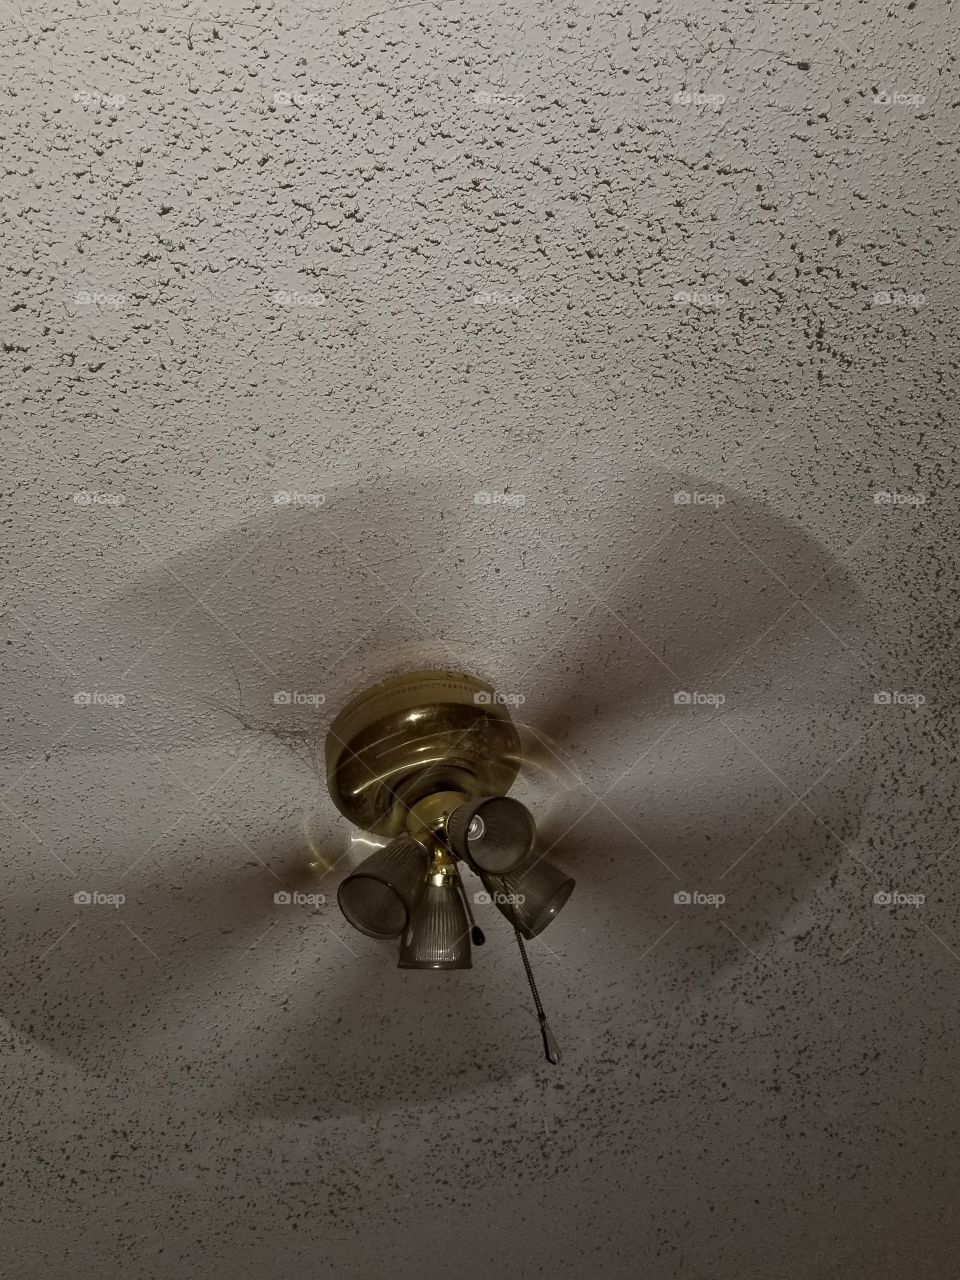 Dusty fan